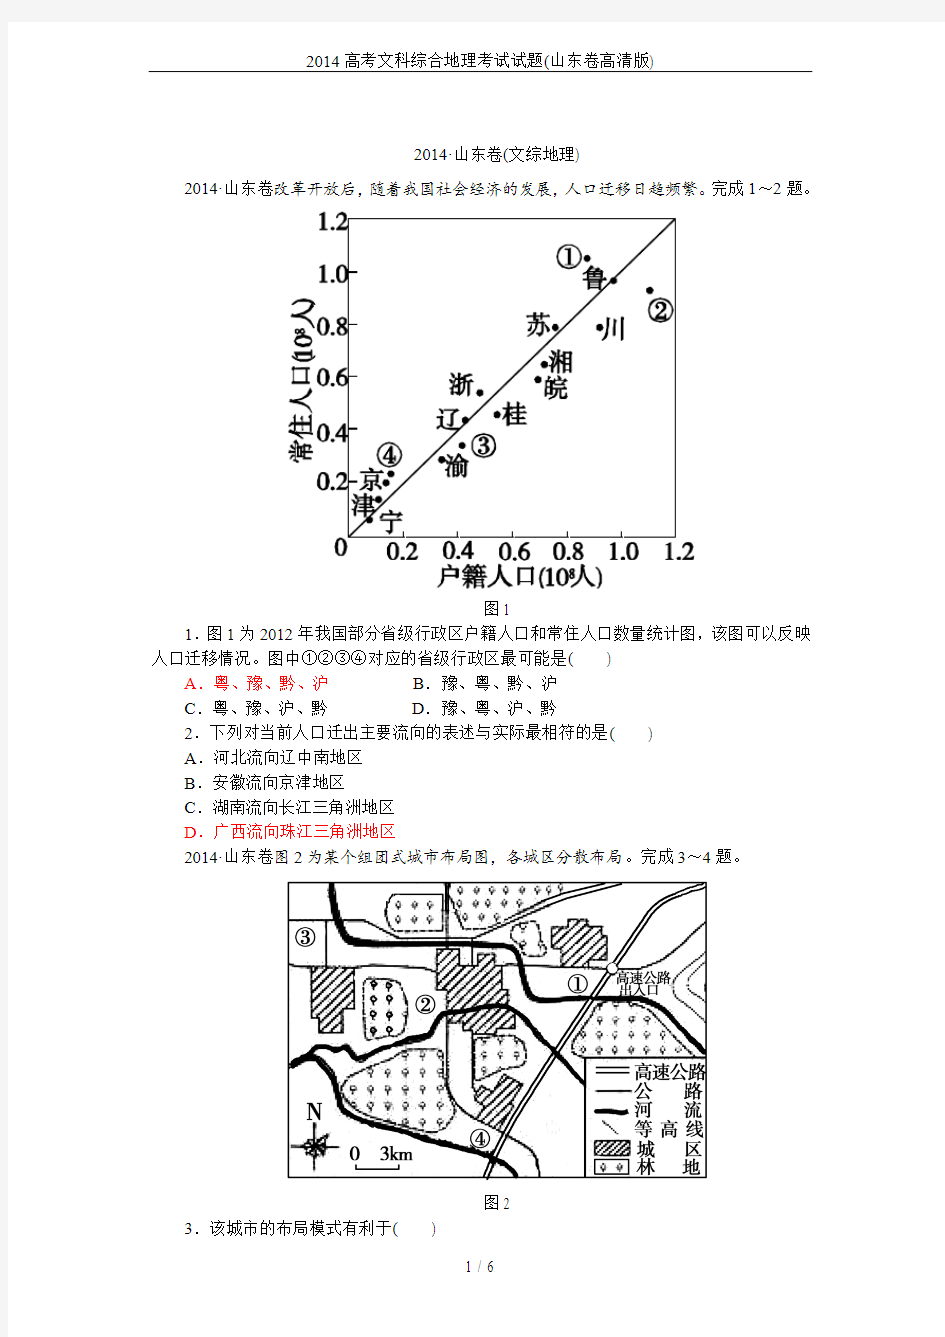 2014高考文科综合地理考试试题(山东卷高清版)